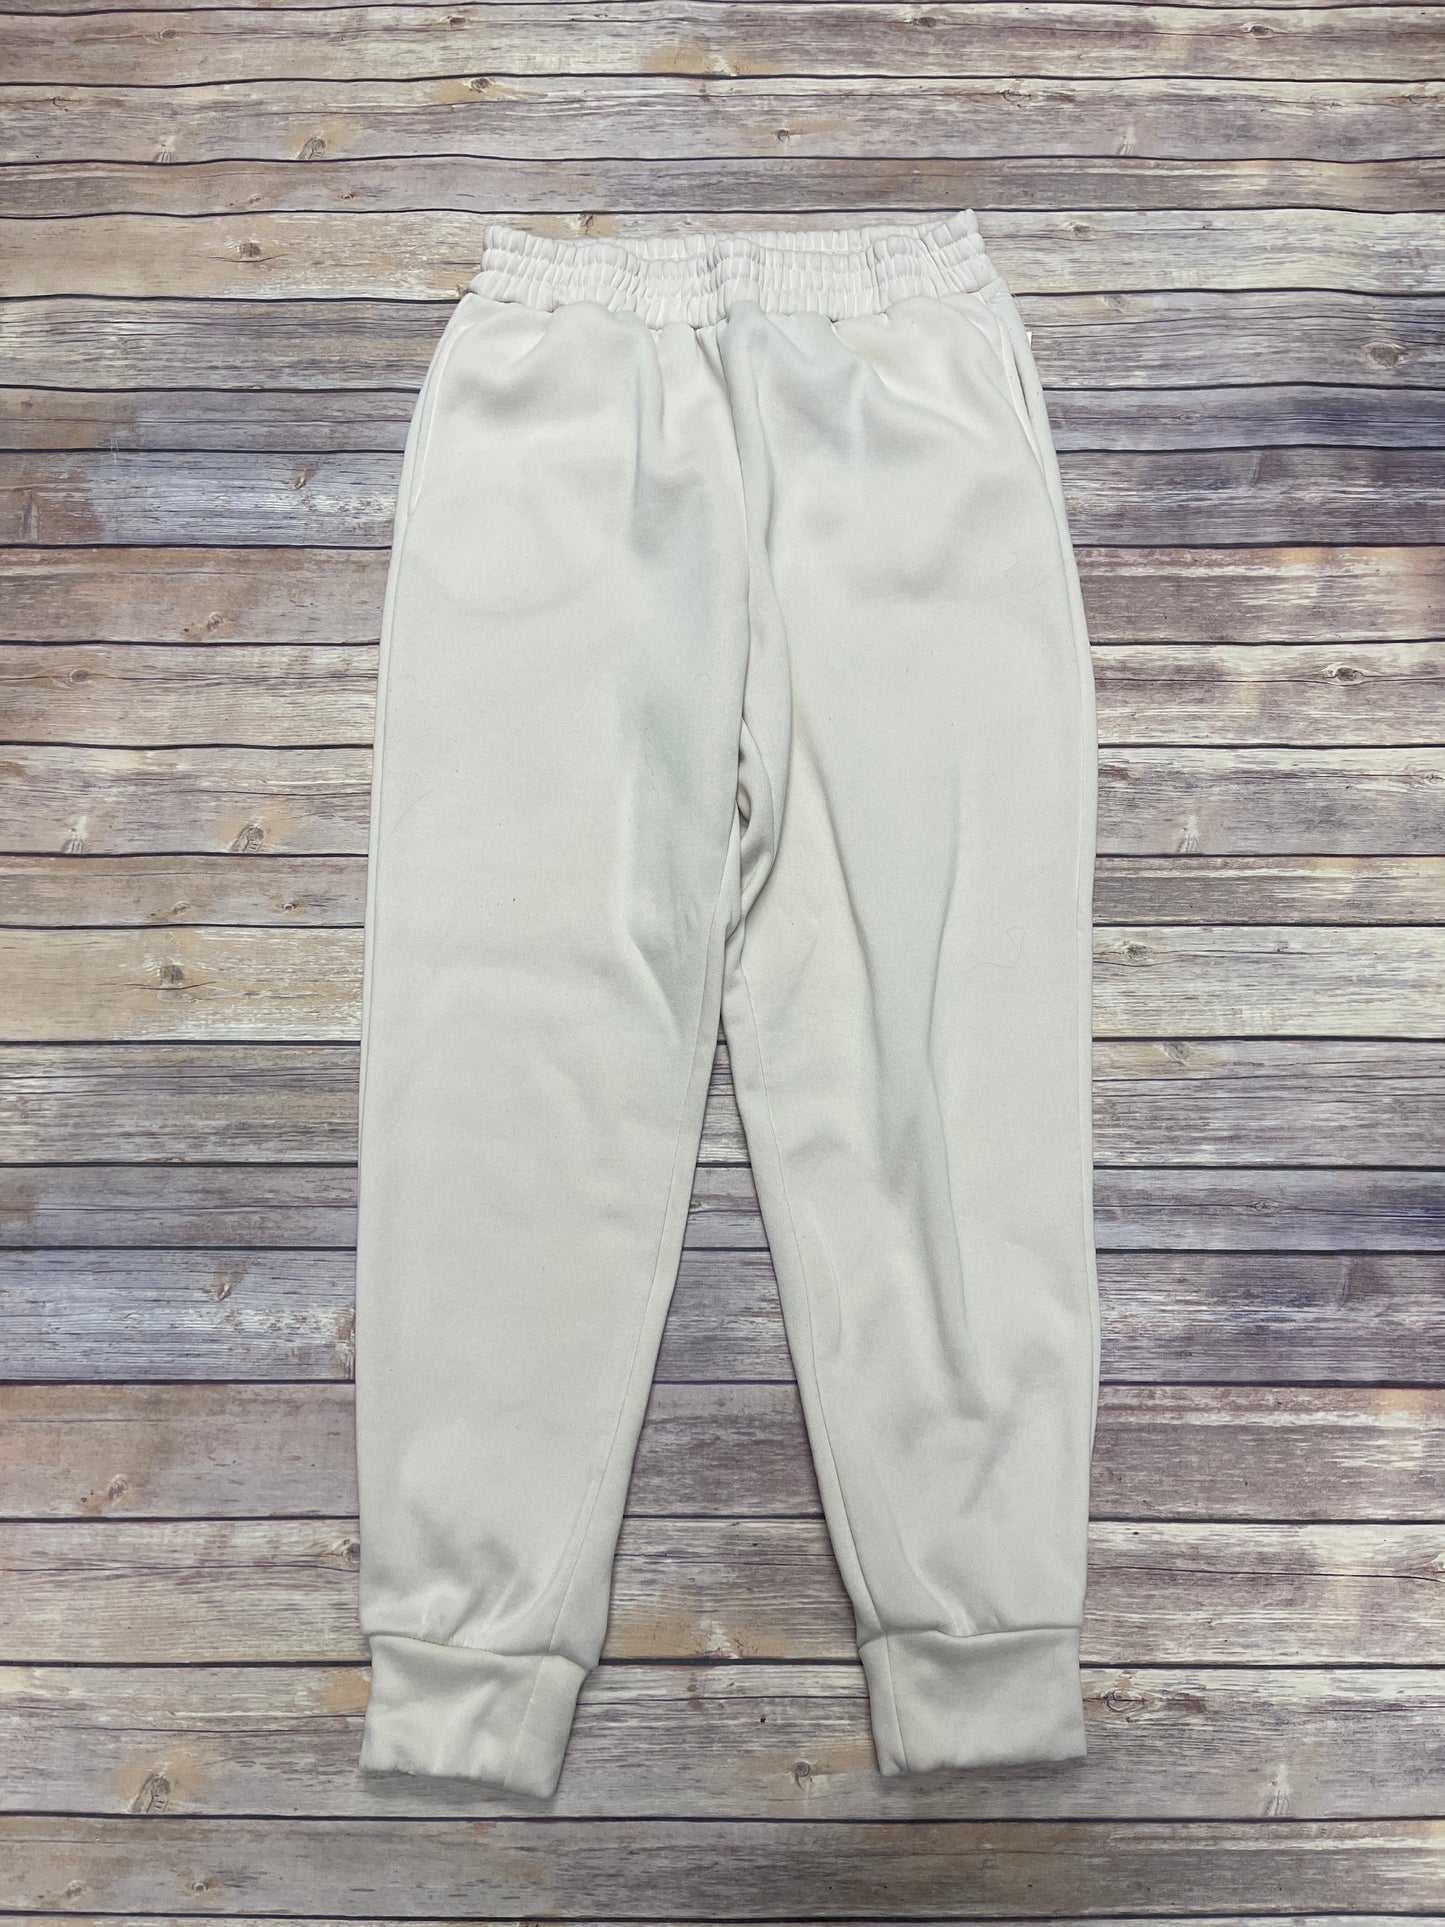 Pants Sweatpants By Ci Sono  Size: L